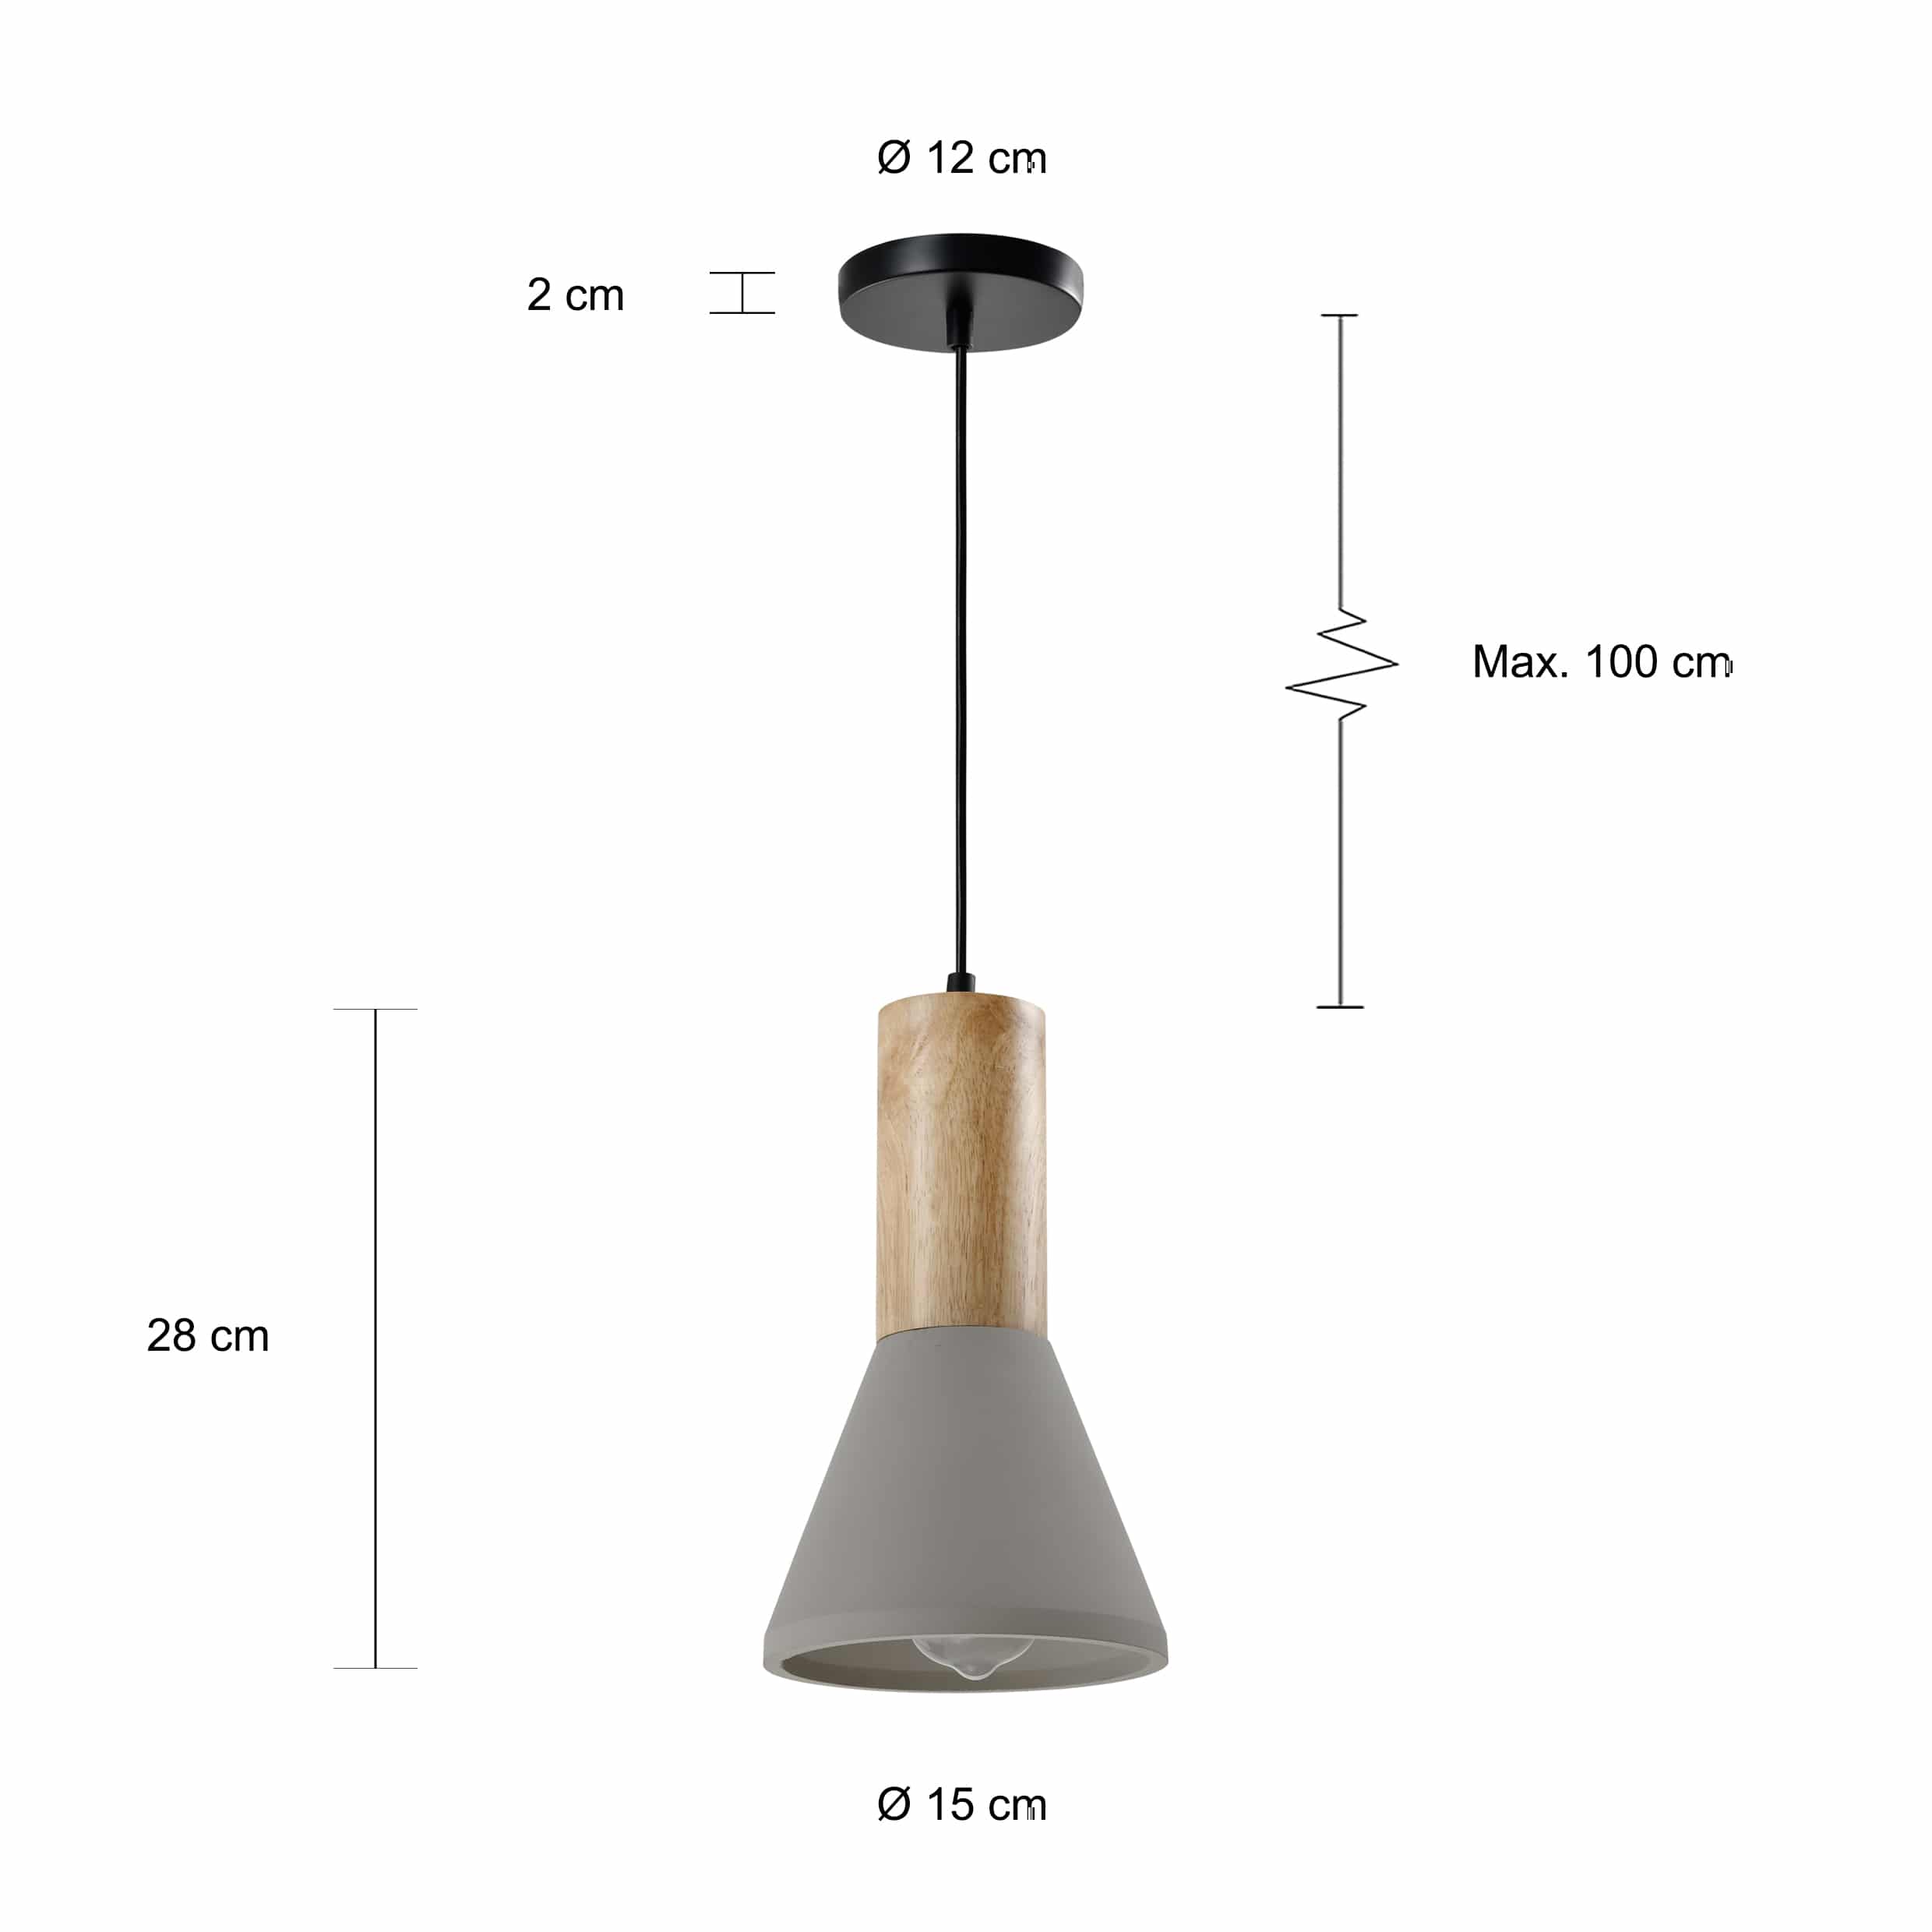 Afmetingen grijs landelijke hanglamp met een diameter van 15 cm